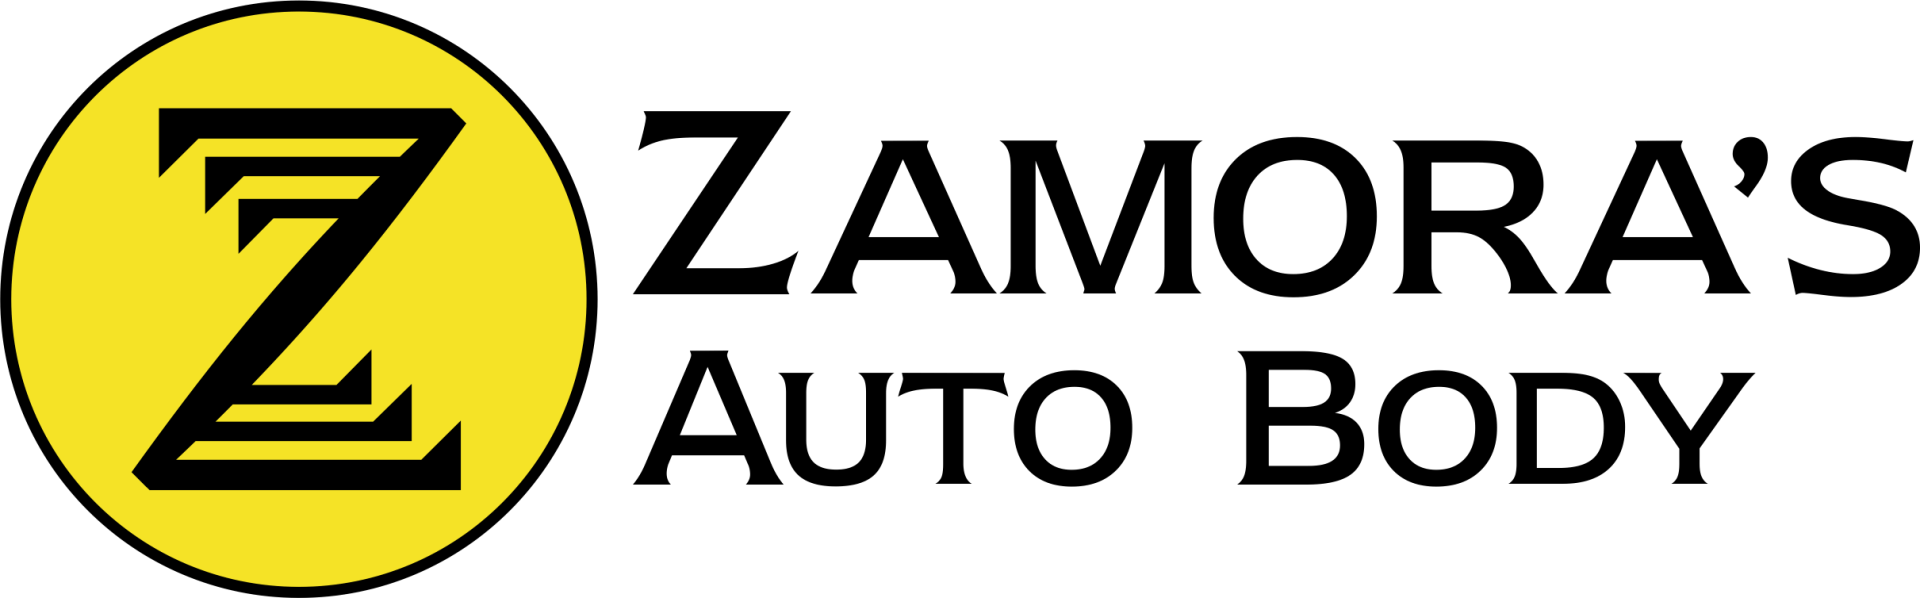 Zamoras Auto Body - logo